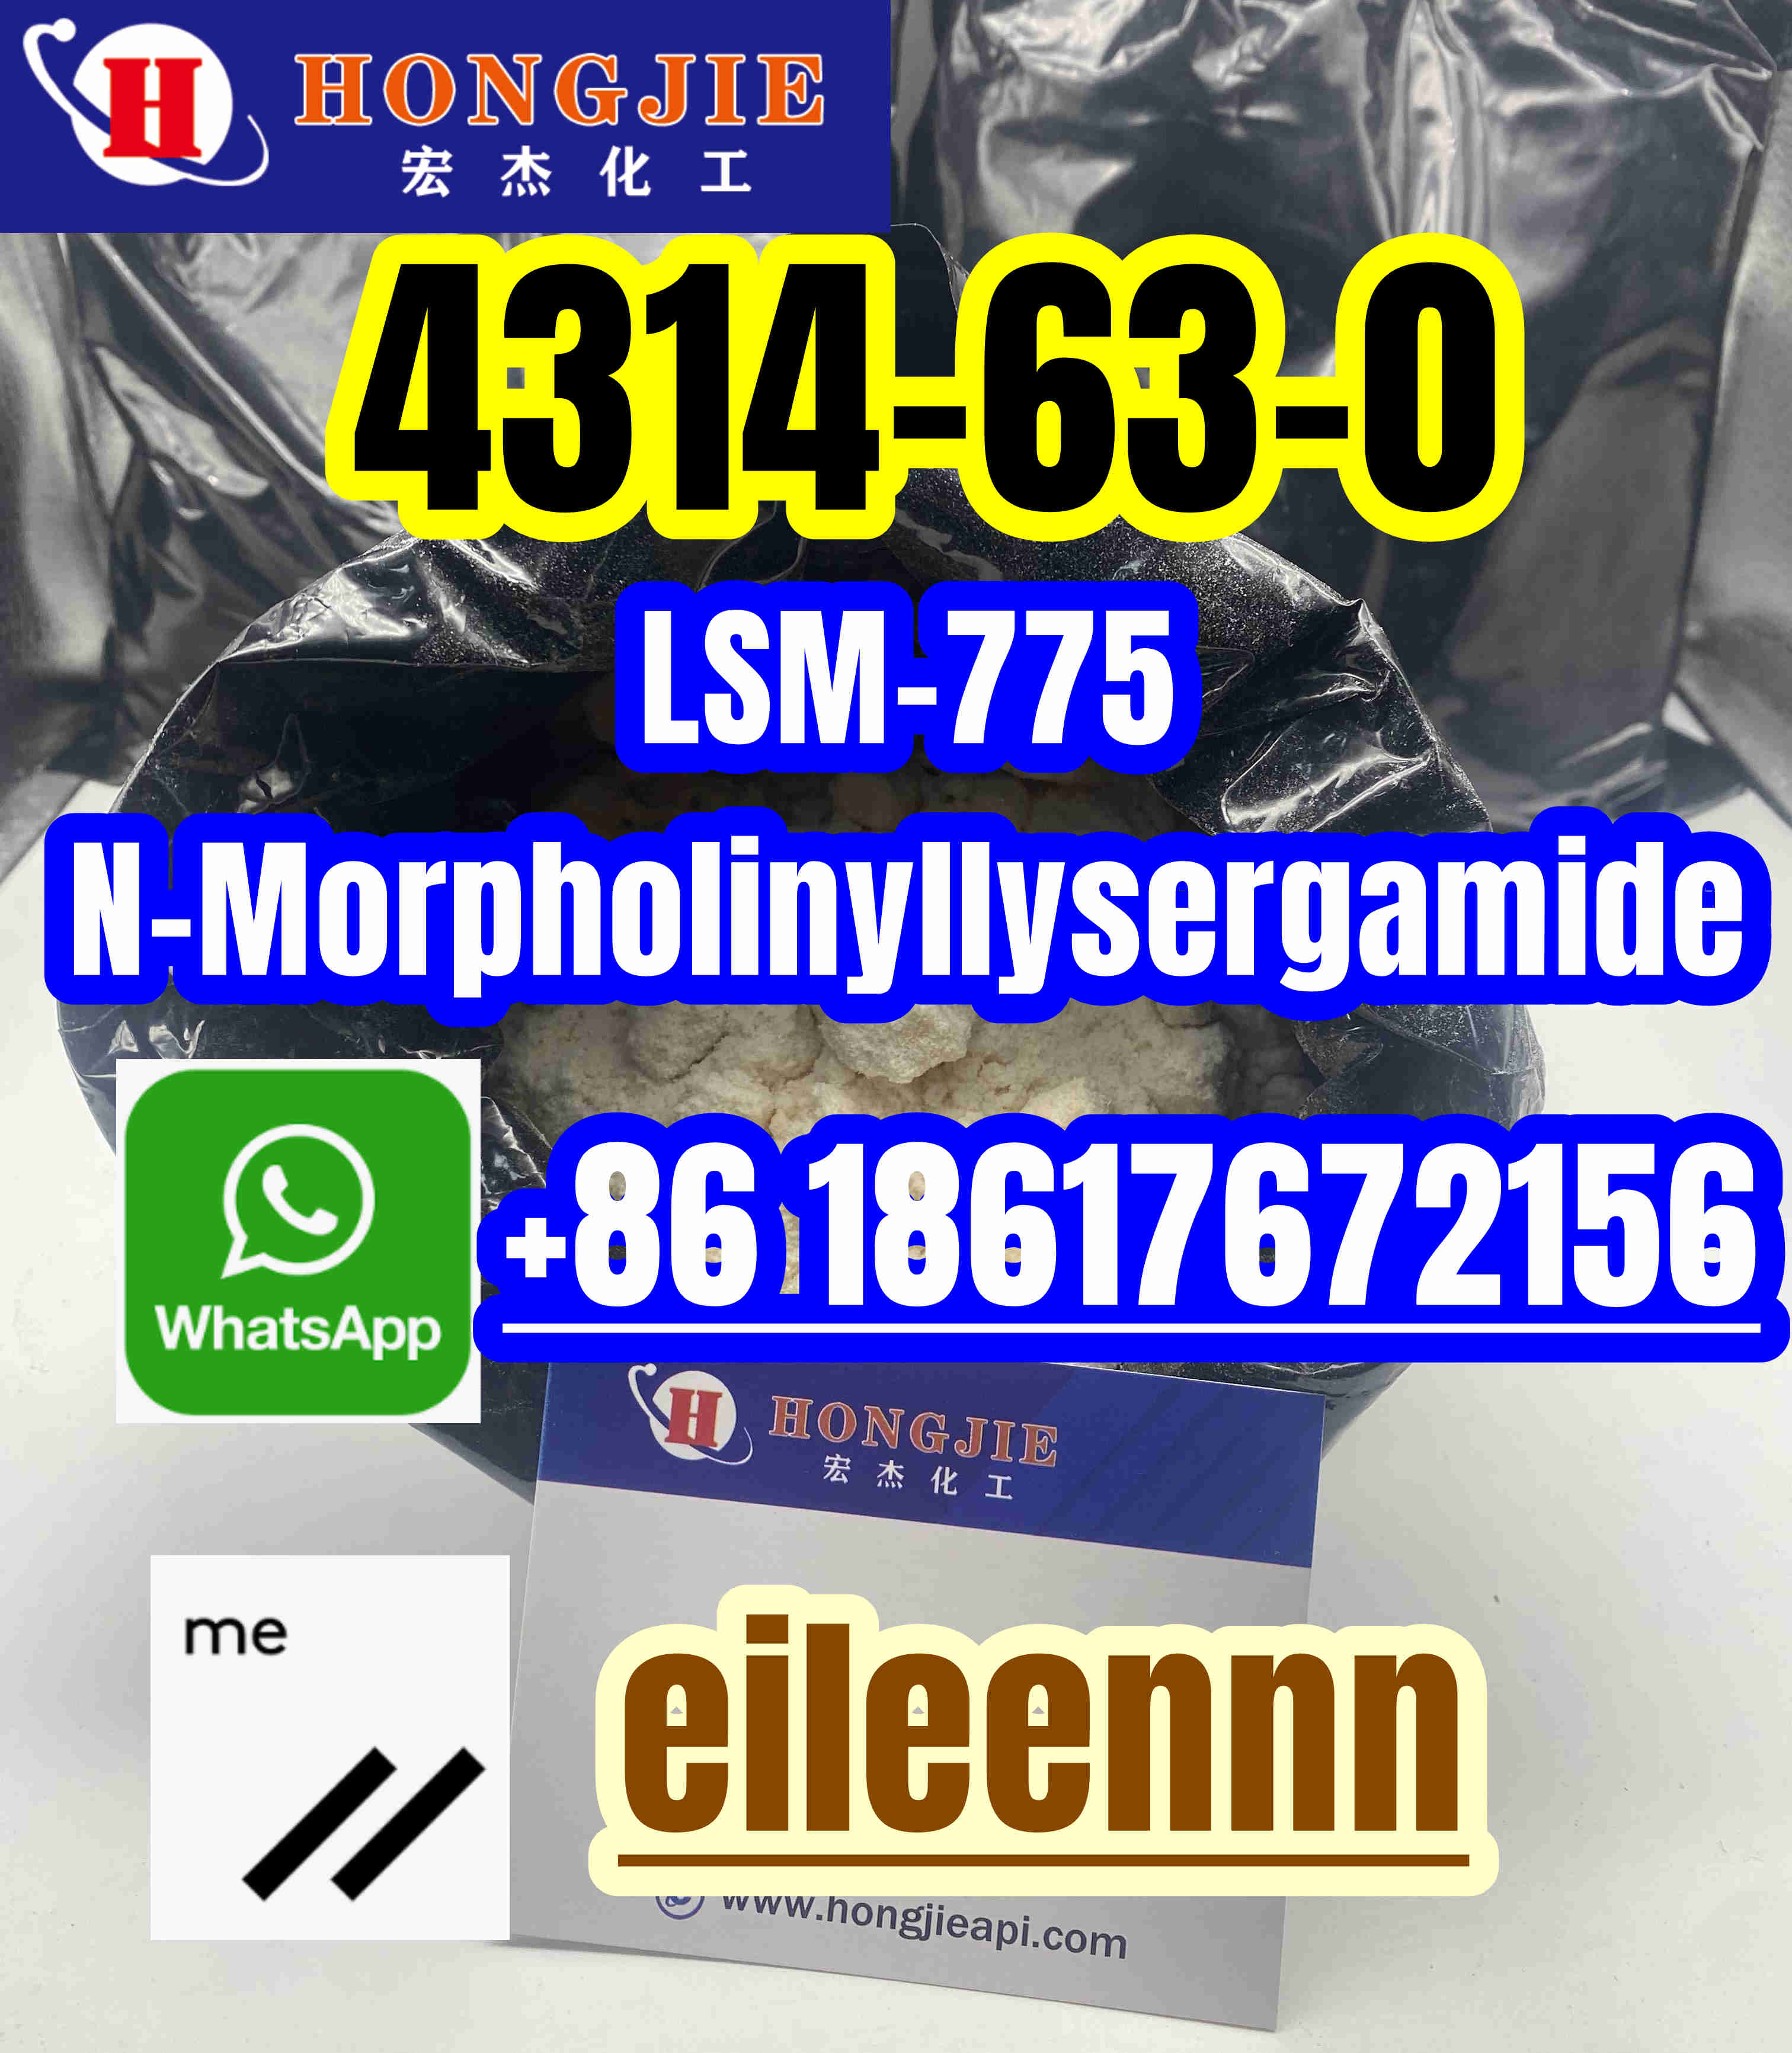 4314-63-0 LSM-775, N-Morpholinyllysergamide low price - photo